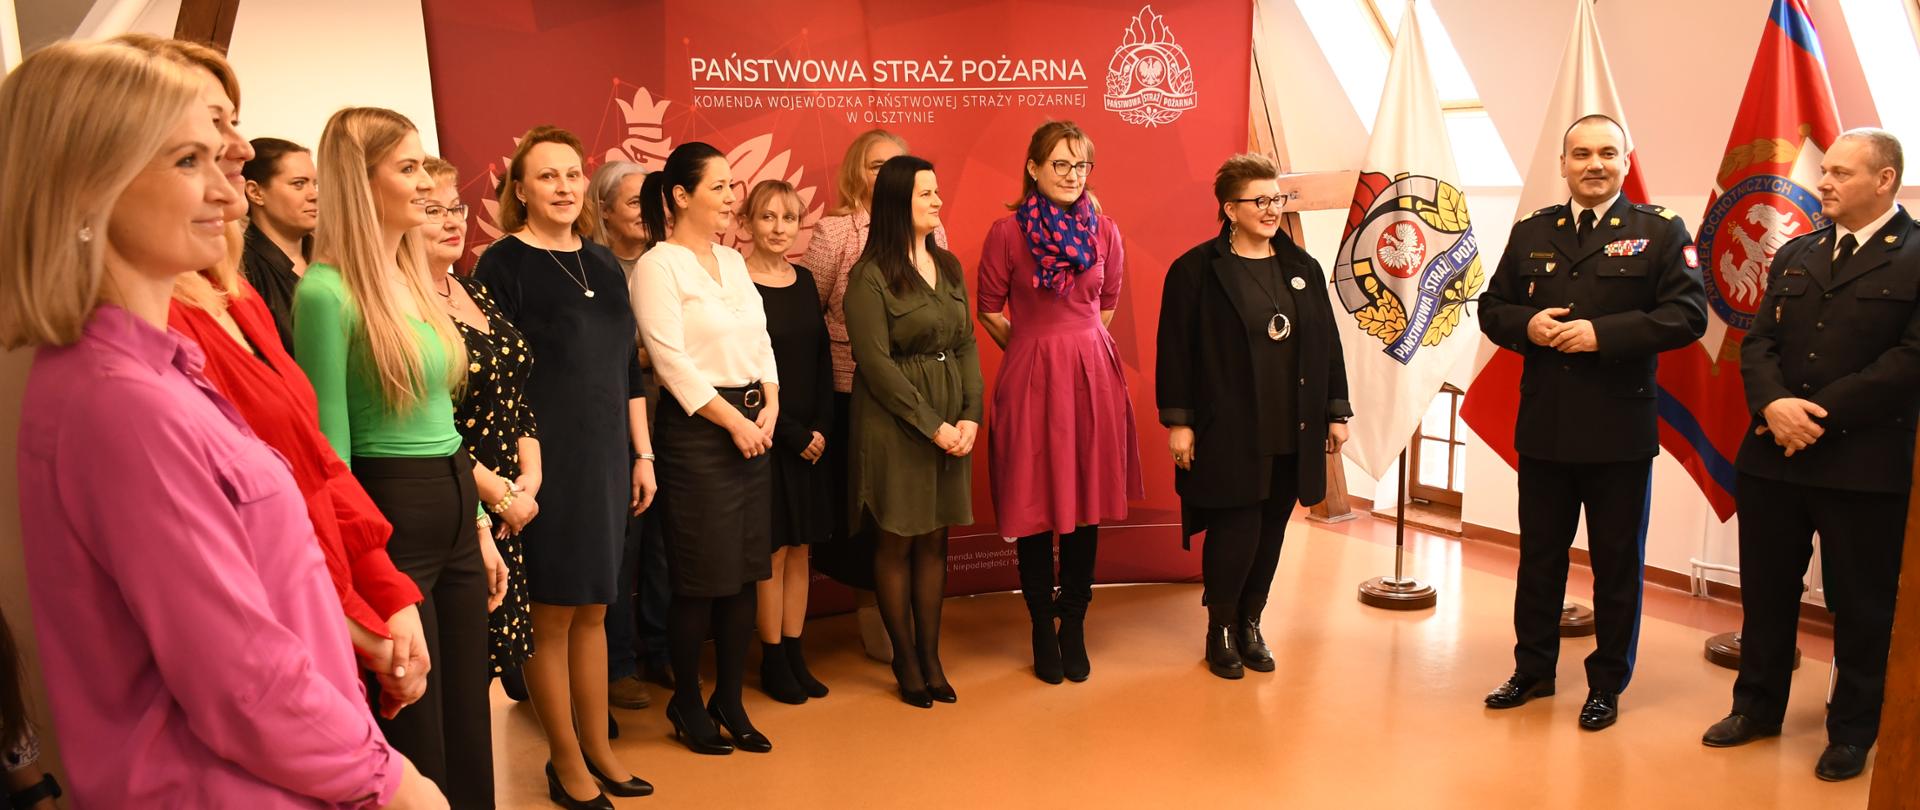 Komendant Wojewódzki składa Paniom życzenia z okazji Dnia Kobiet 